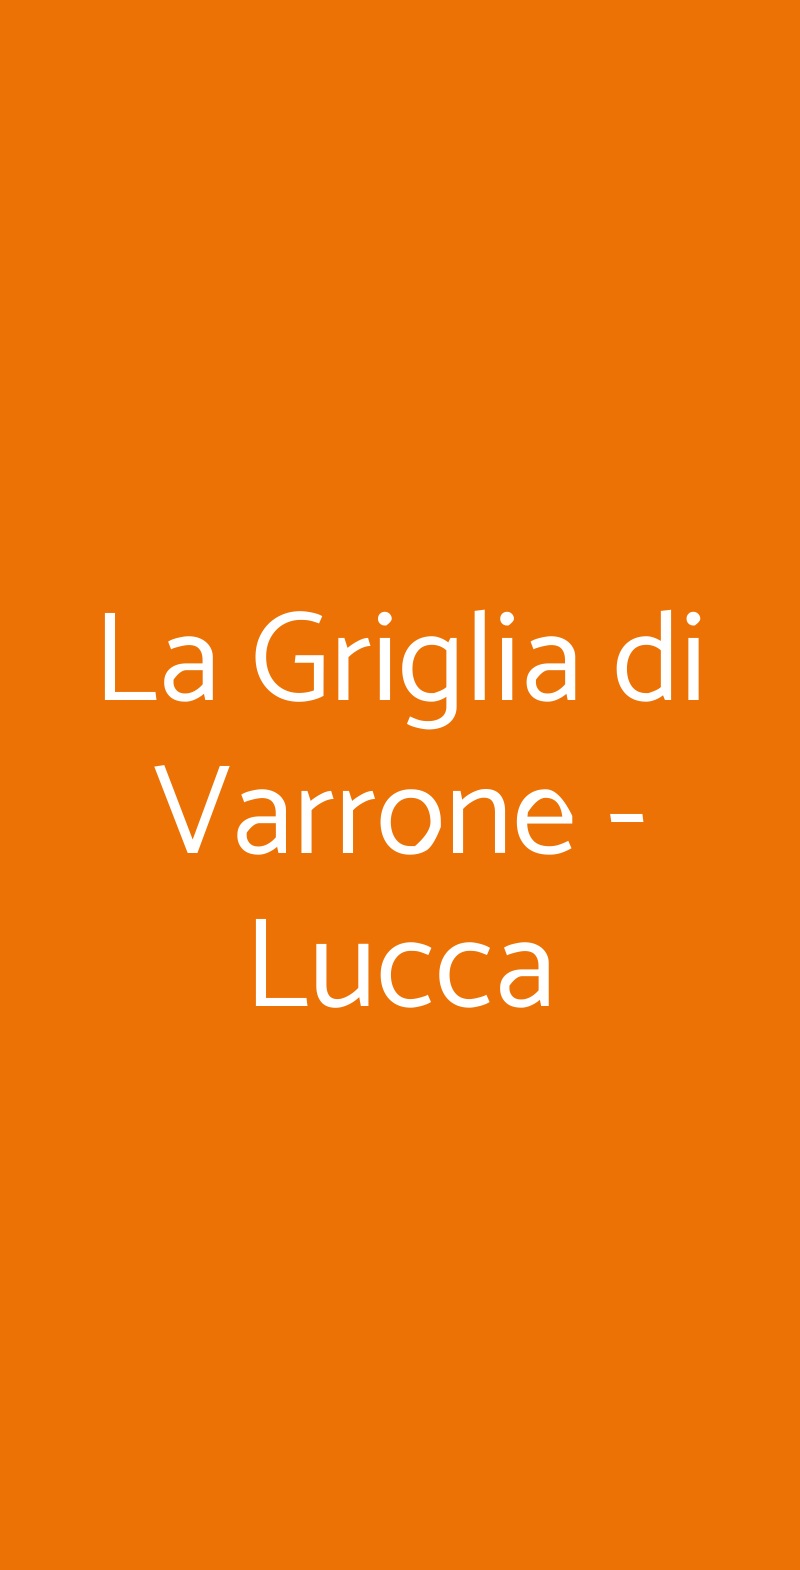 La Griglia di Varrone - Lucca Lucca menù 1 pagina